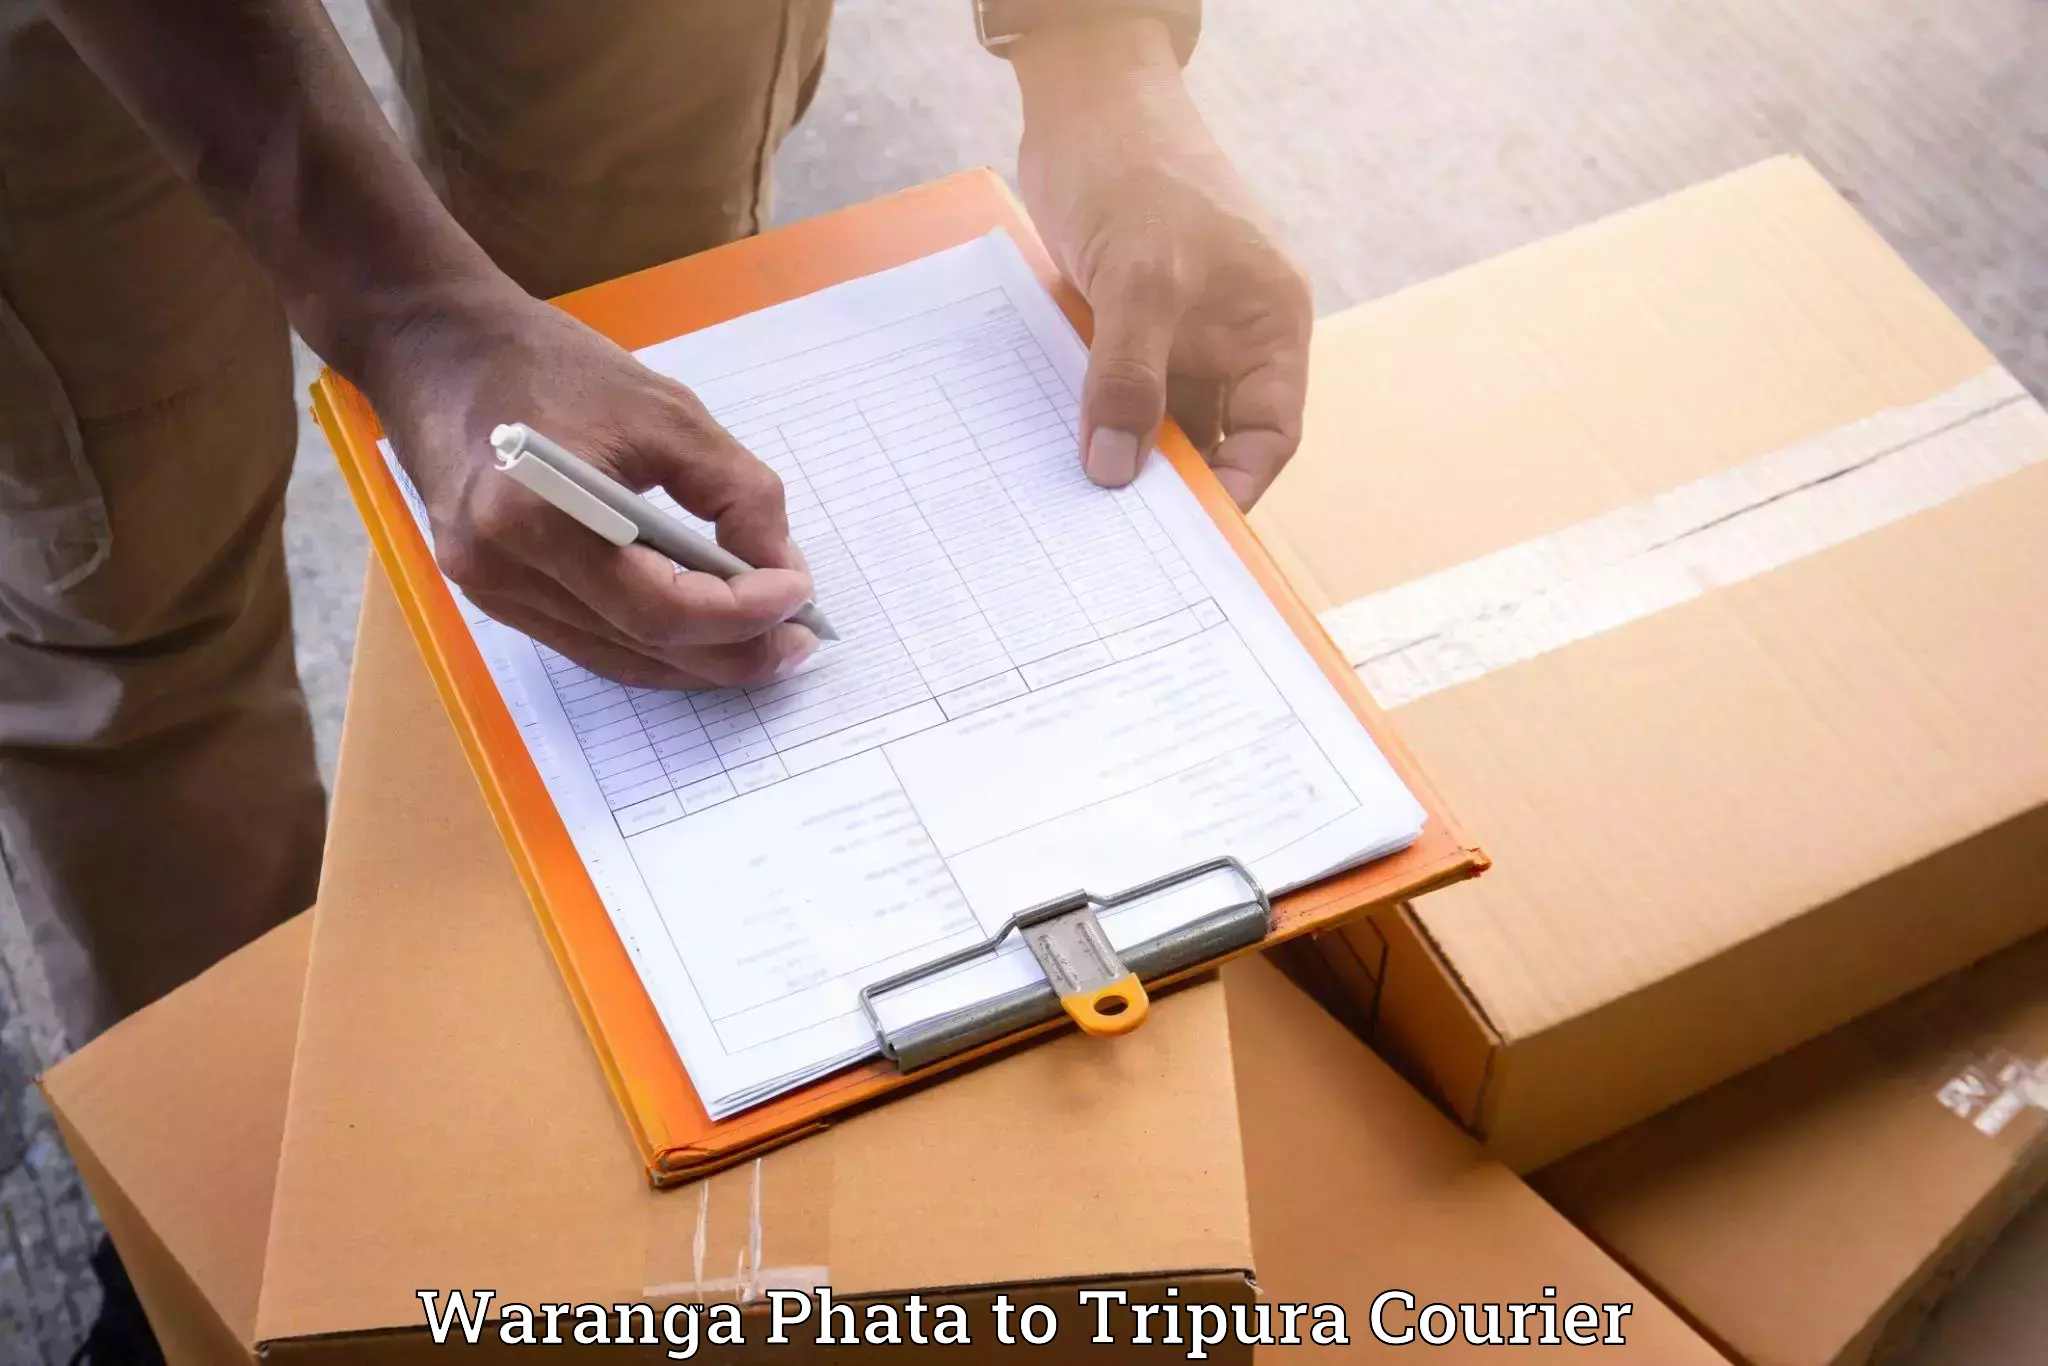 Stress-free household moving Waranga Phata to South Tripura